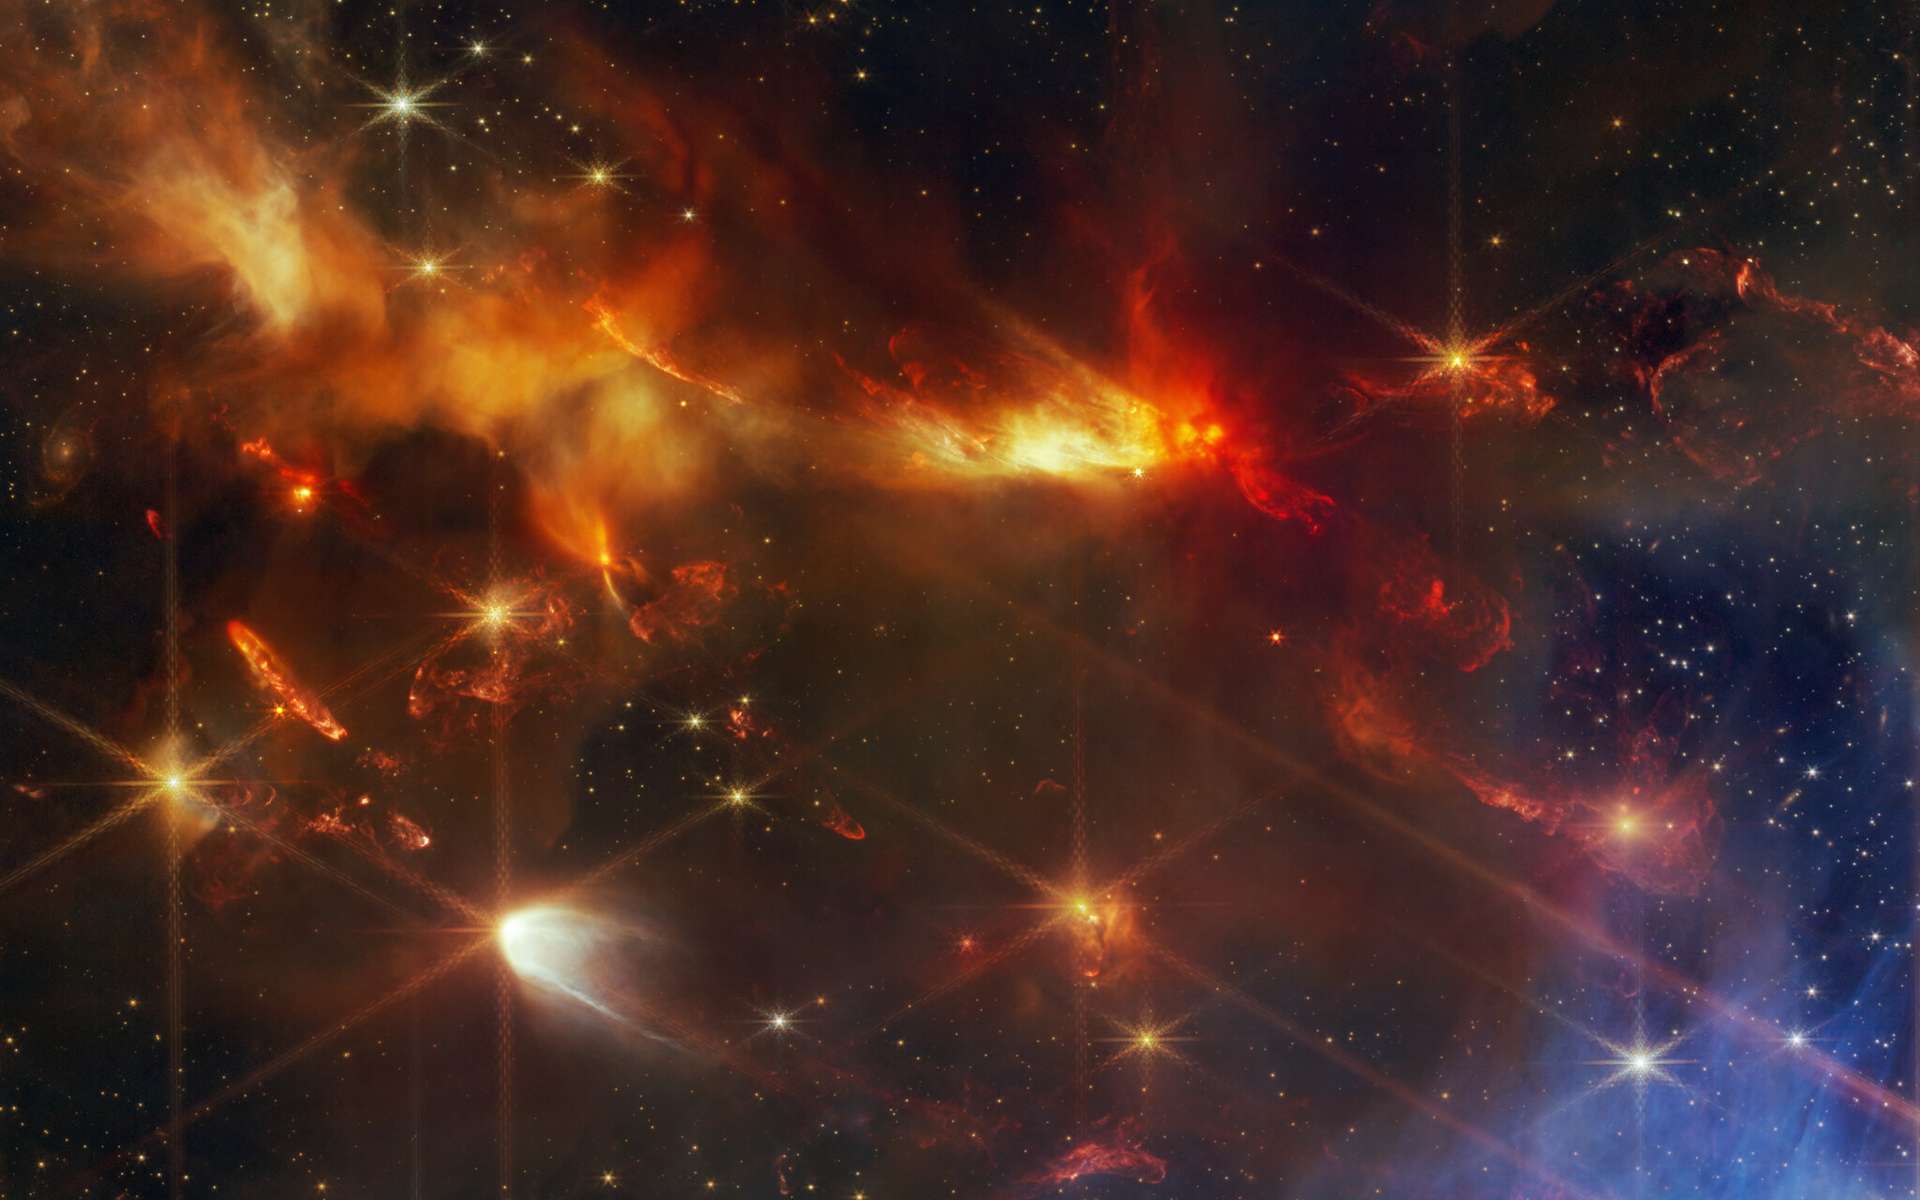 Le James-Webb a découvert des jets d'étoiles alignés. Un mystère ?